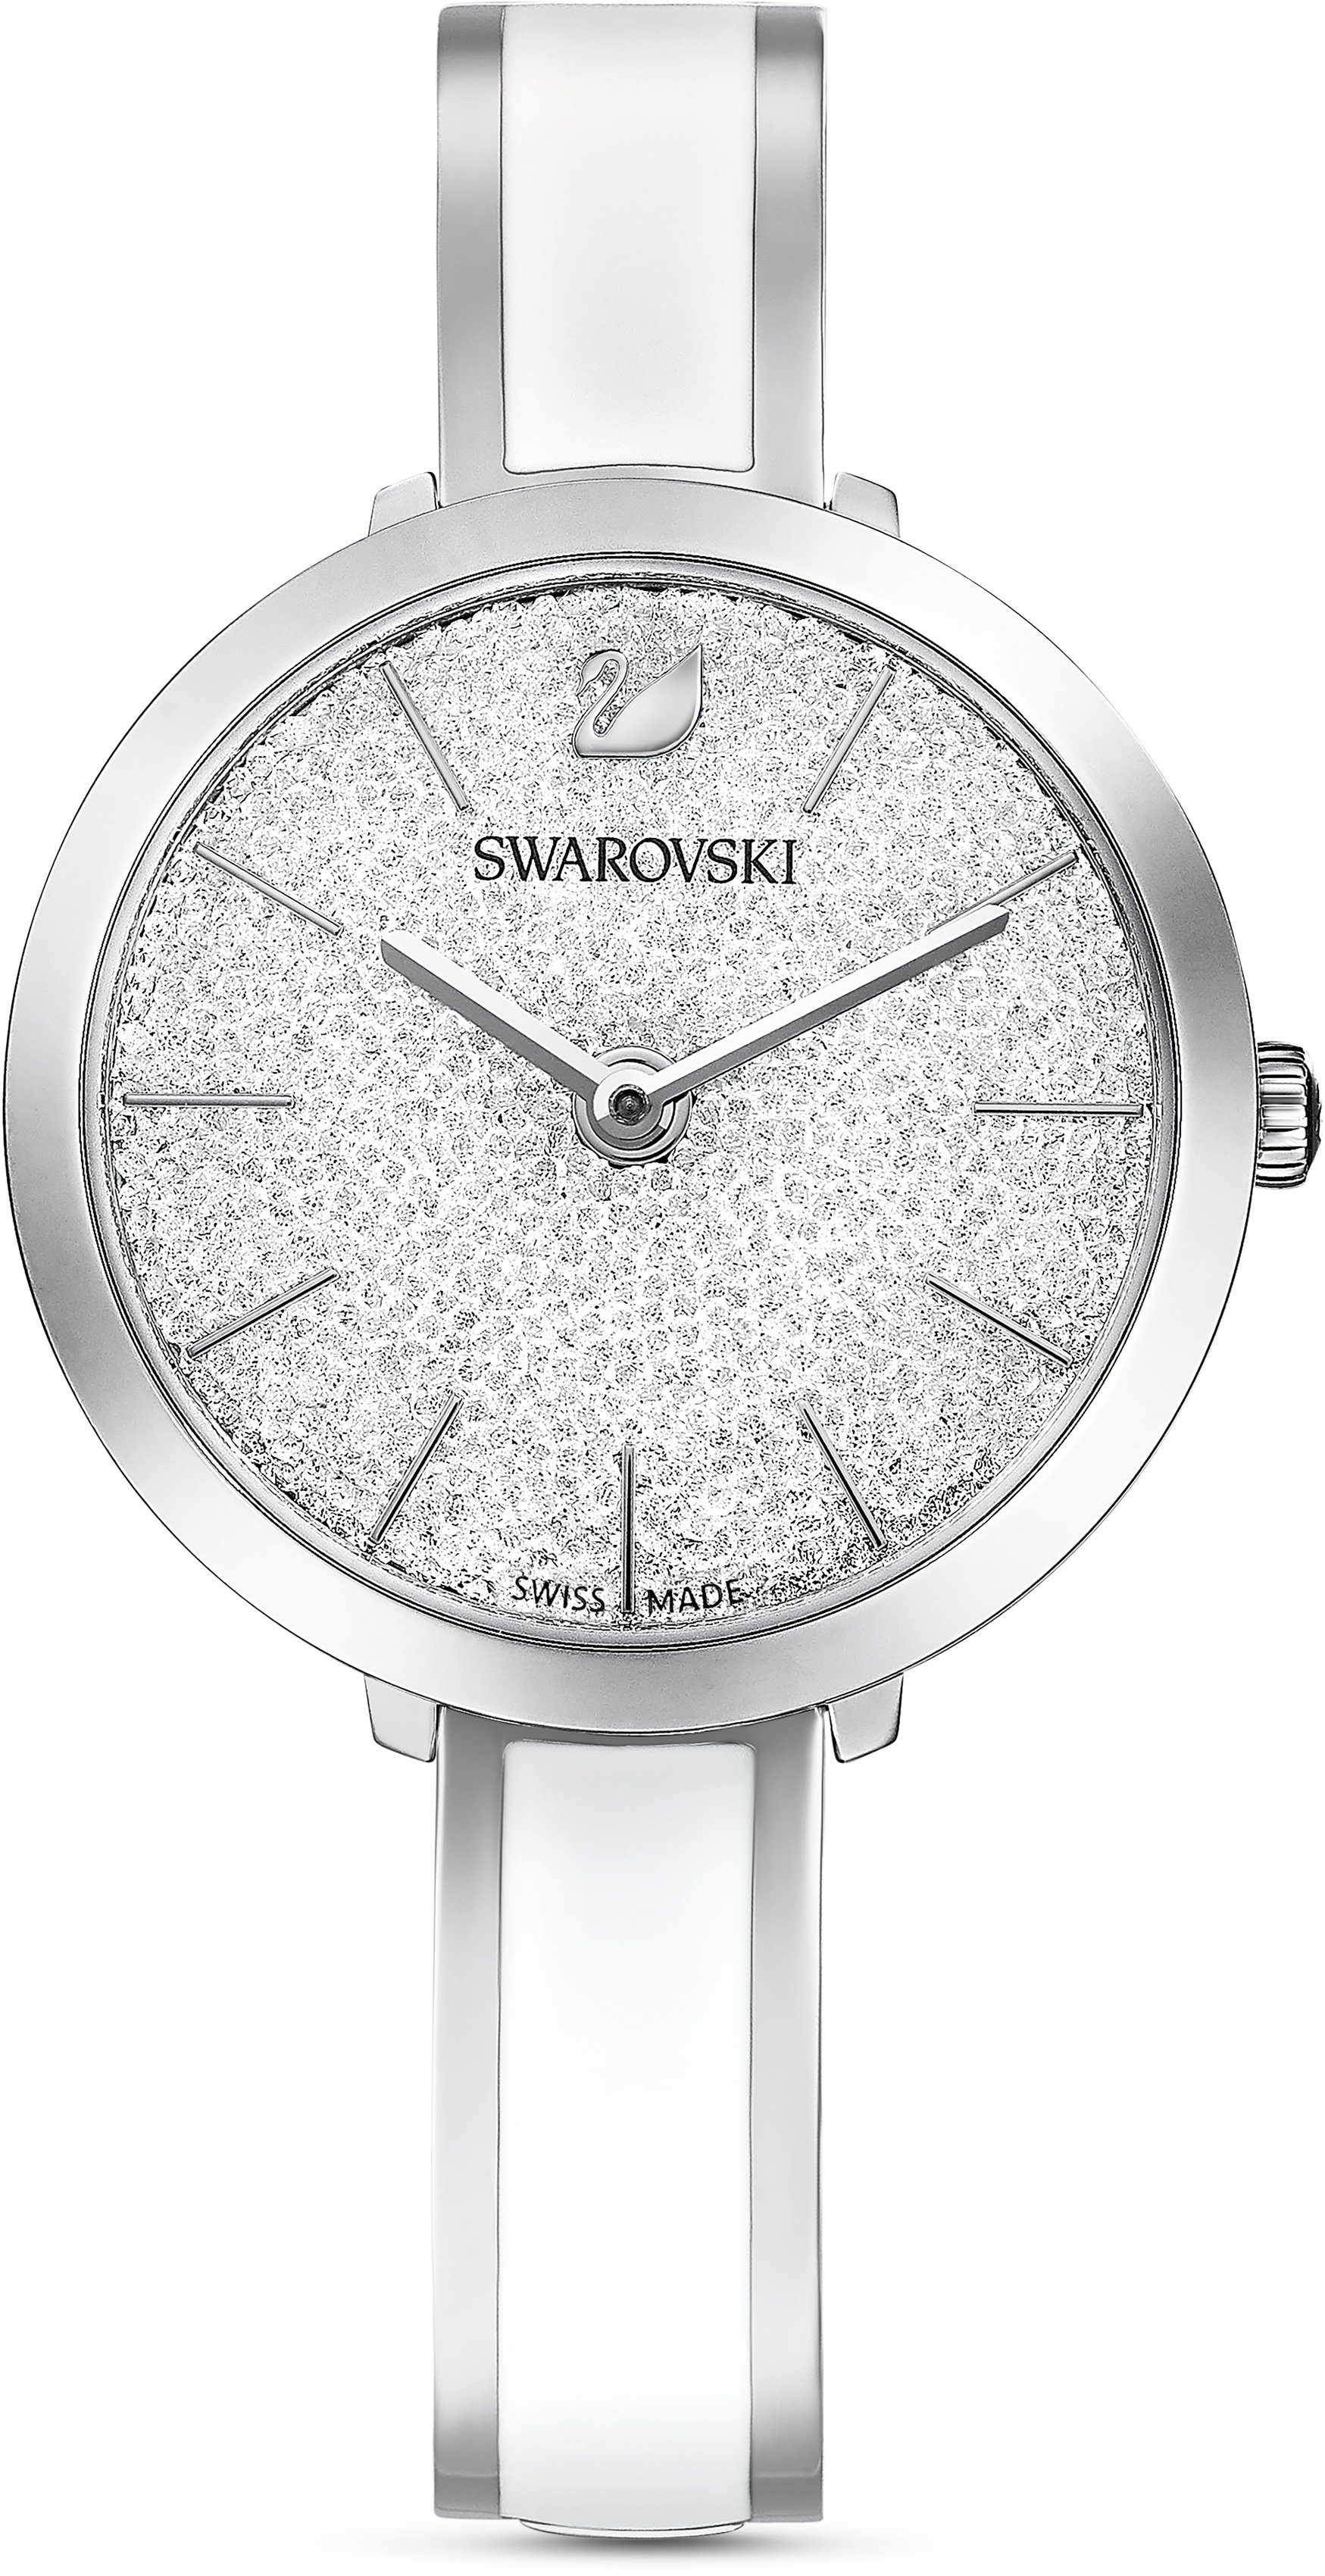 Crystalline Delight, 5580537 silber Uhr Schweizer Swarovski